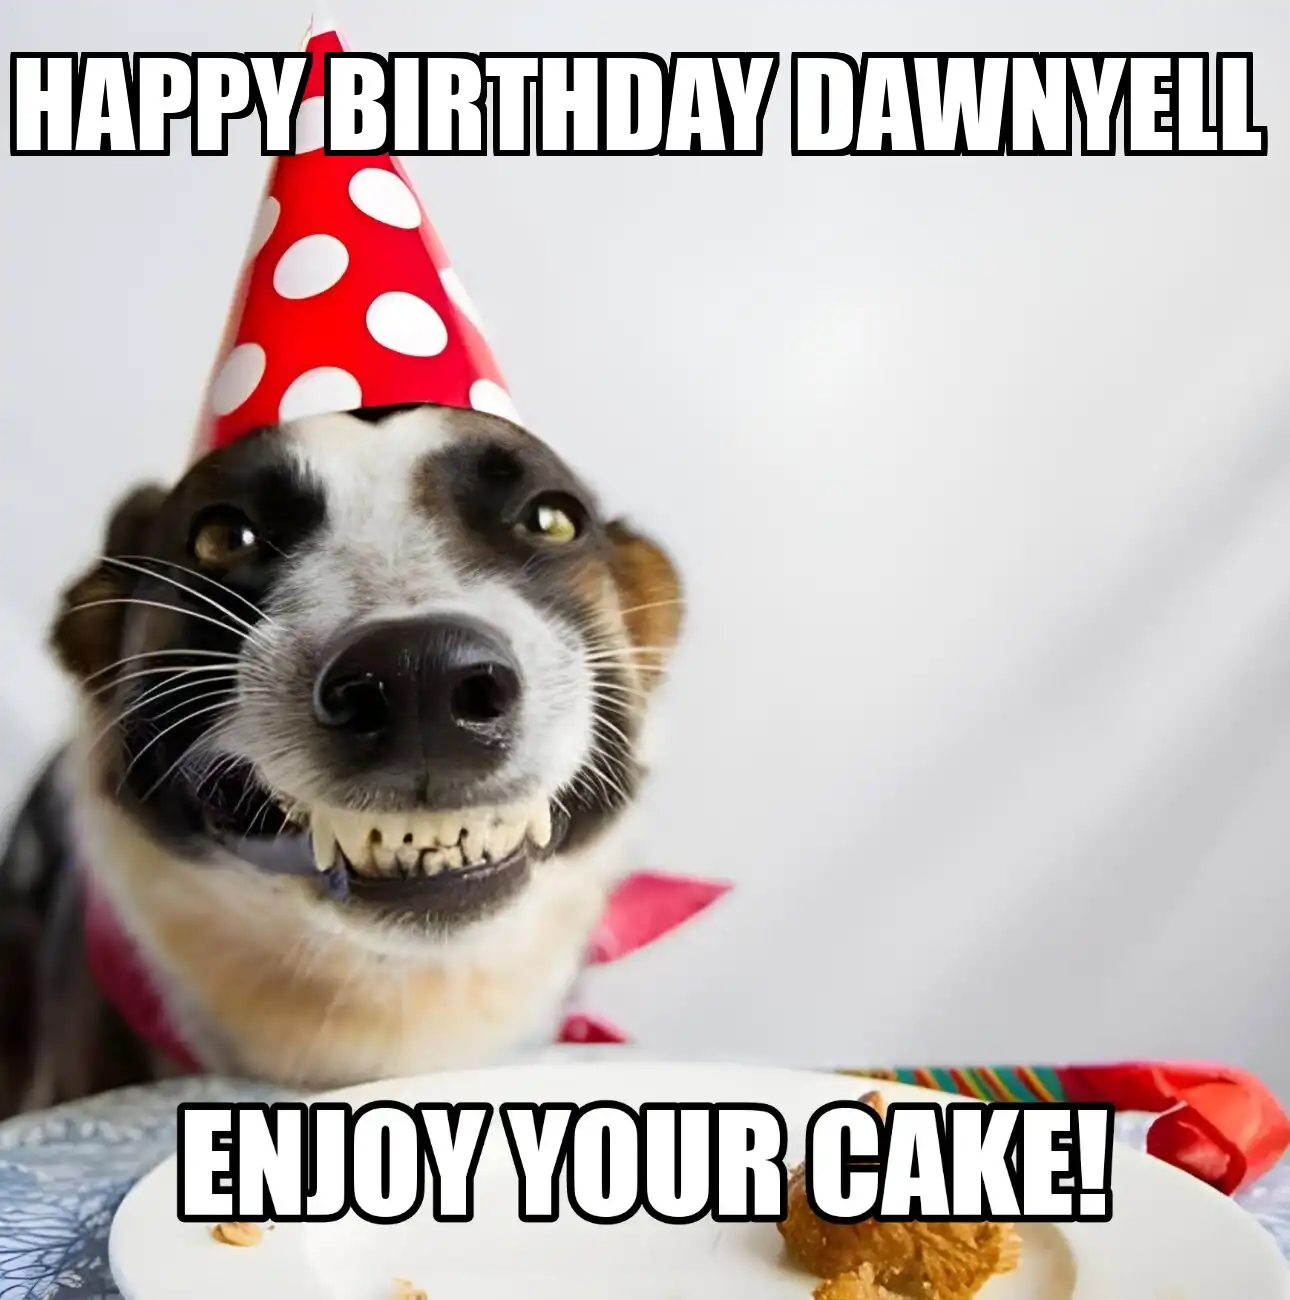 Happy Birthday Dawnyell Enjoy Your Cake Dog Meme